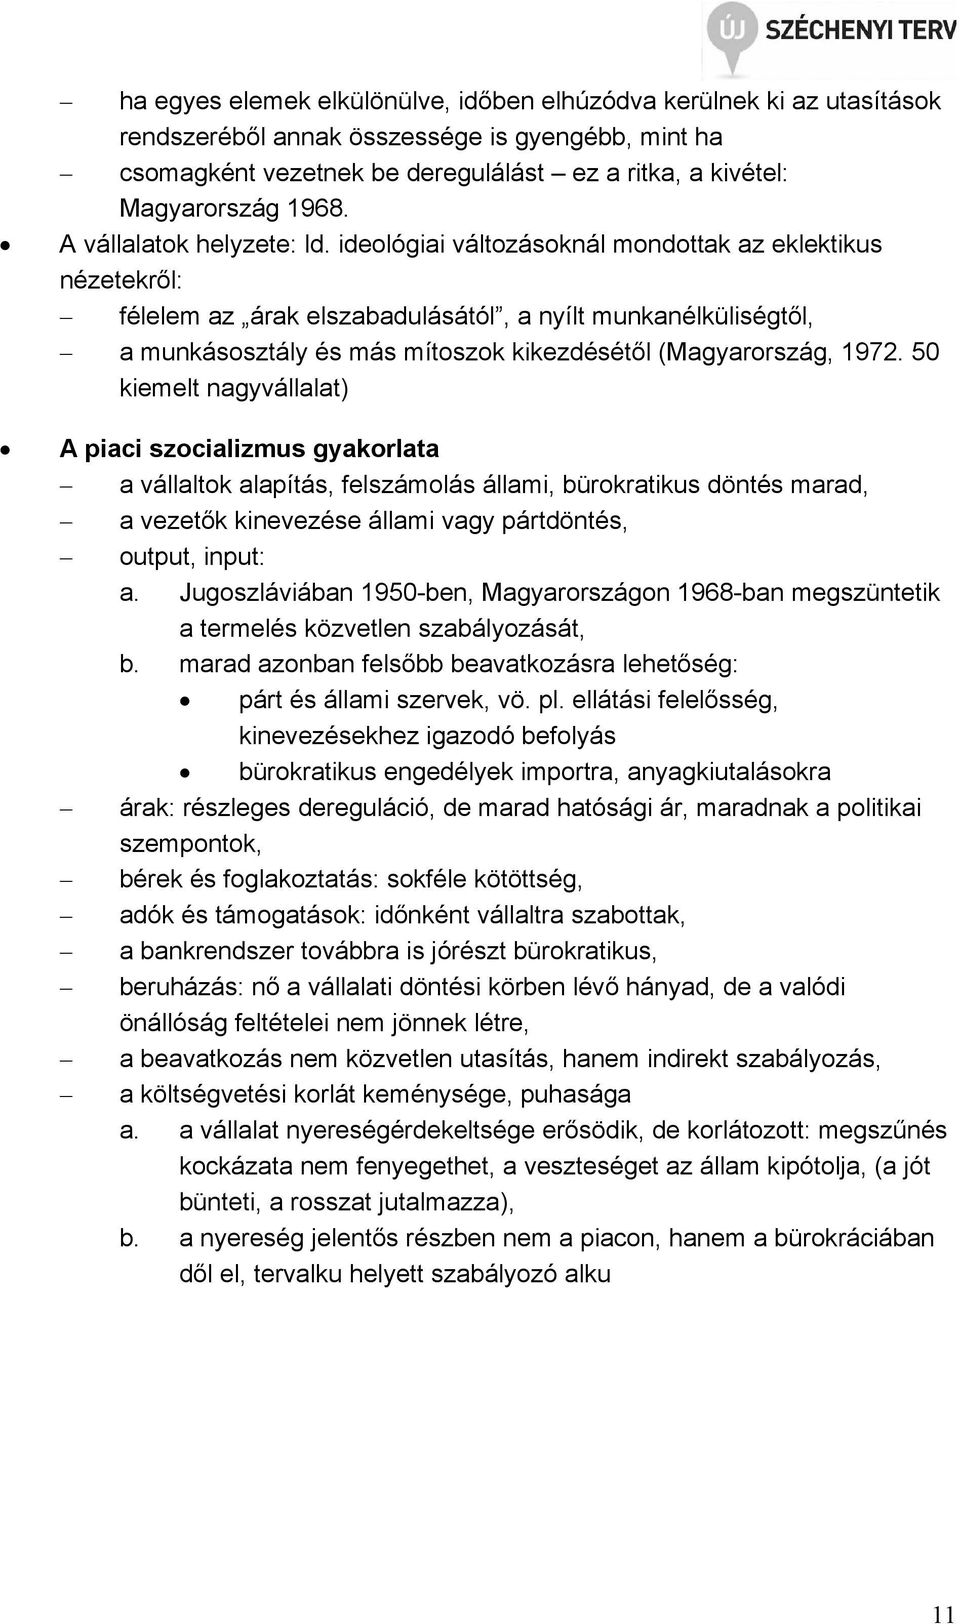 ideológiai változásoknál mondottak az eklektikus nézetekről: félelem az árak elszabadulásától, a nyílt munkanélküliségtől, a munkásosztály és más mítoszok kikezdésétől (Magyarország, 1972.